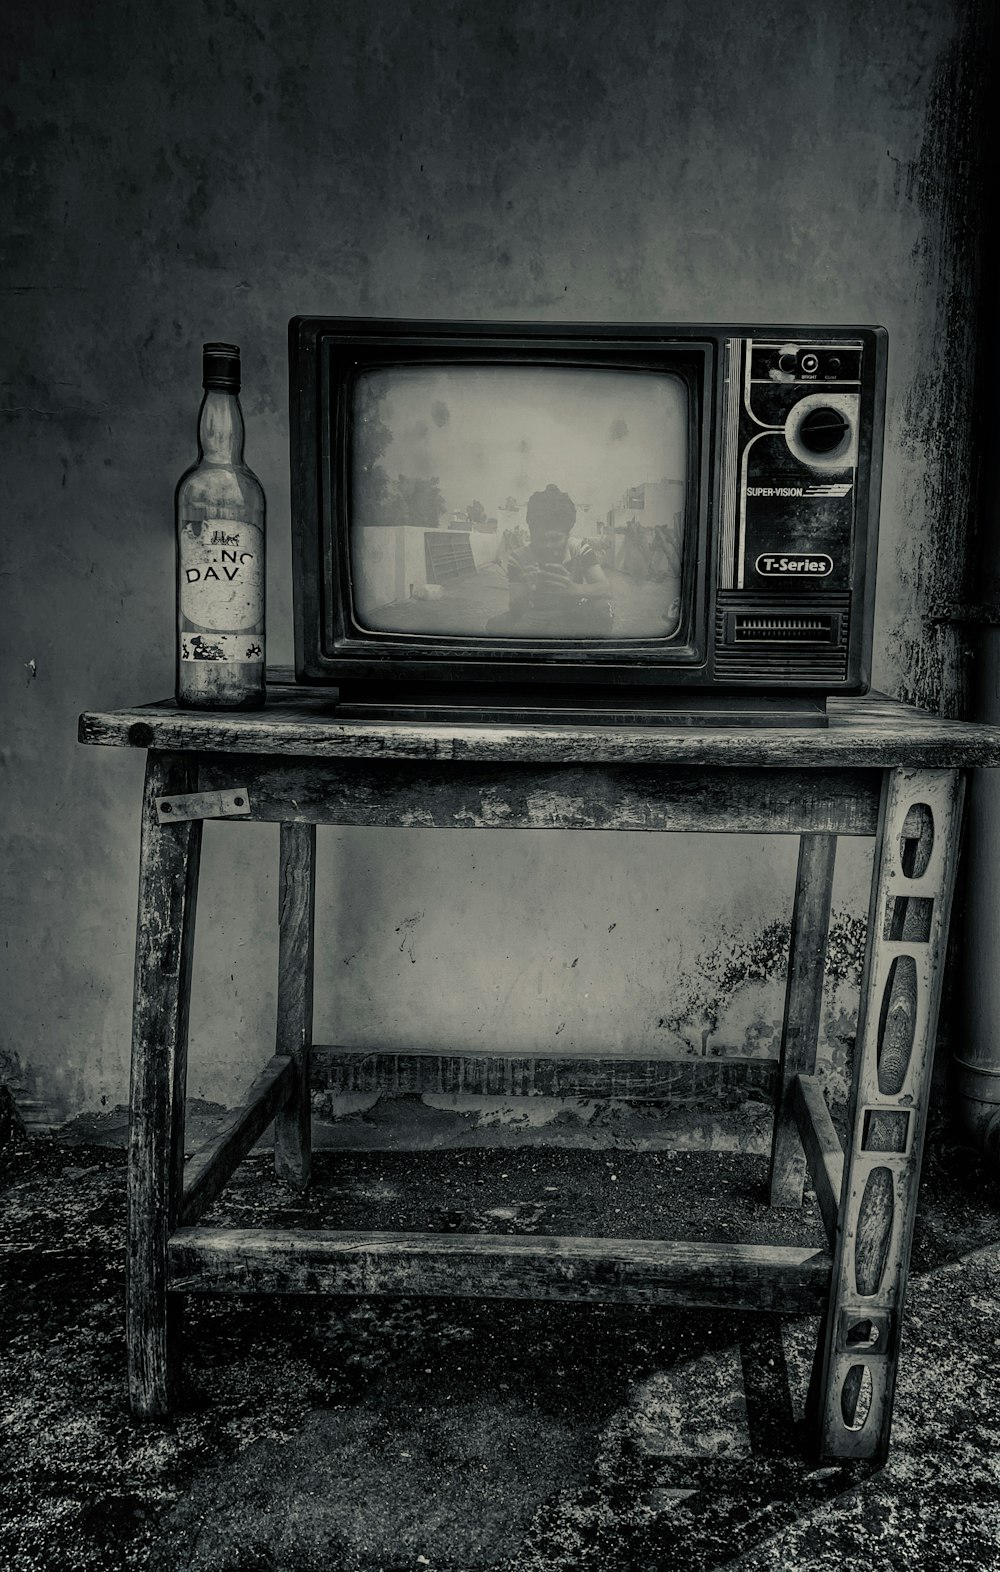 Téléviseur à tube cathodique noir sur support TV en bois noir